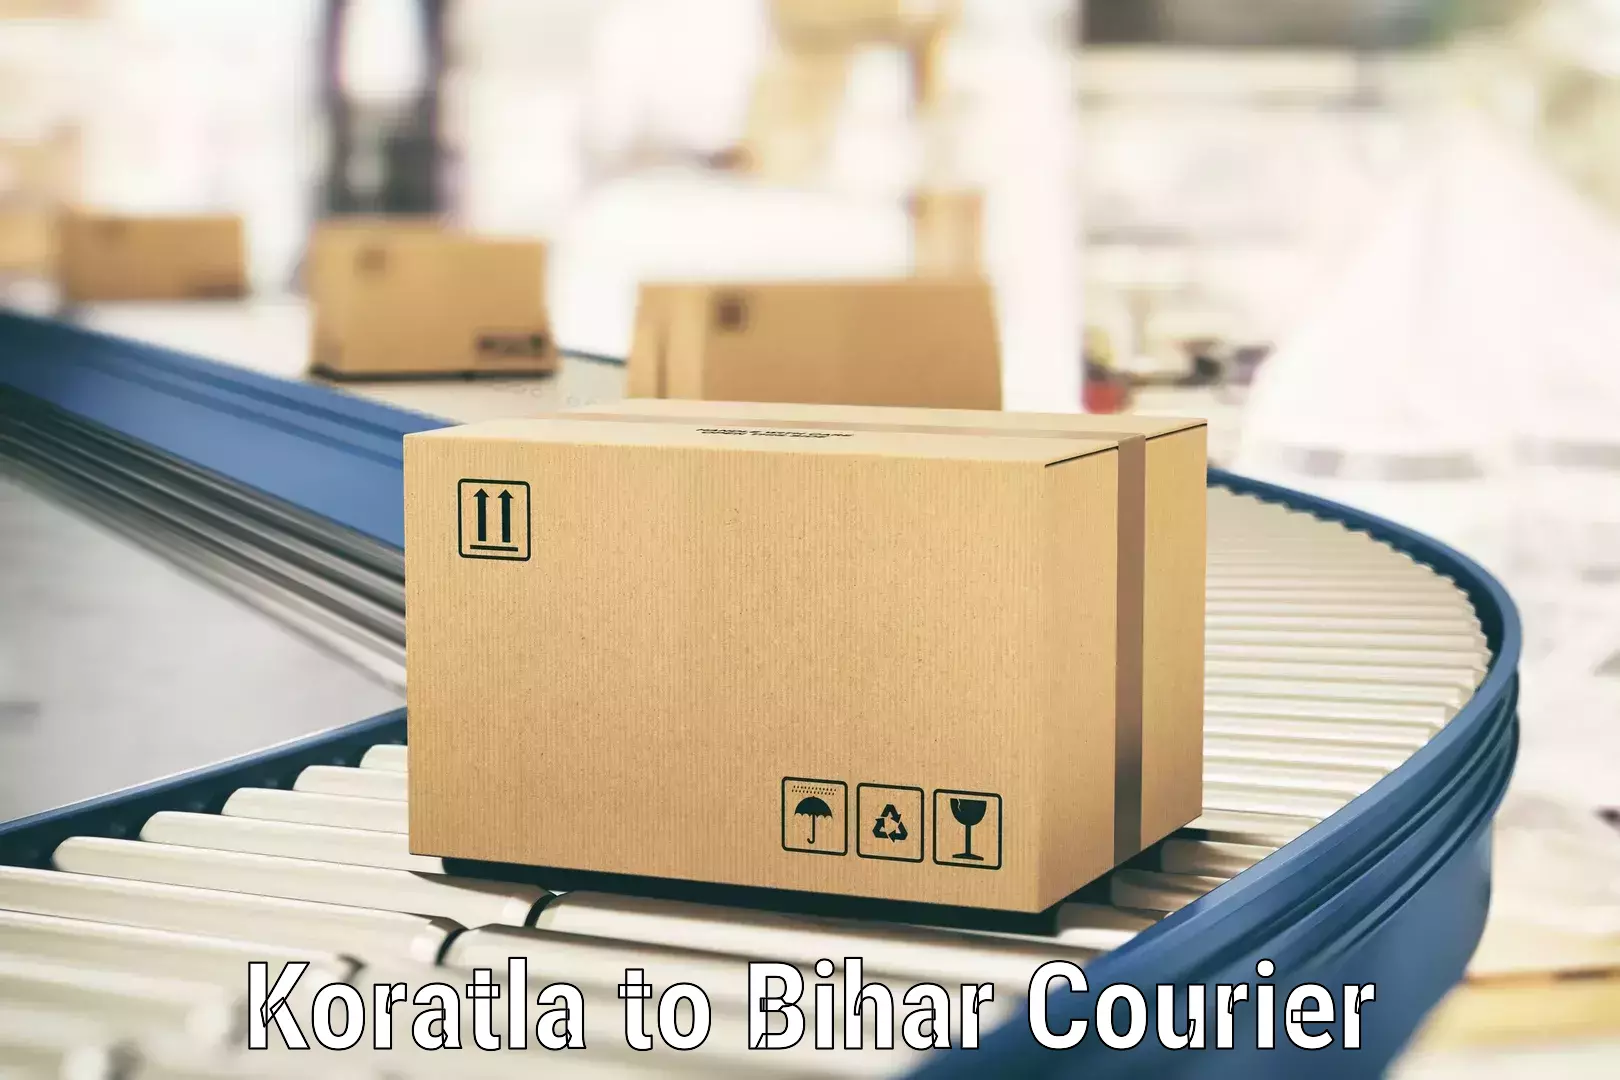 Flexible delivery scheduling Koratla to Katoria